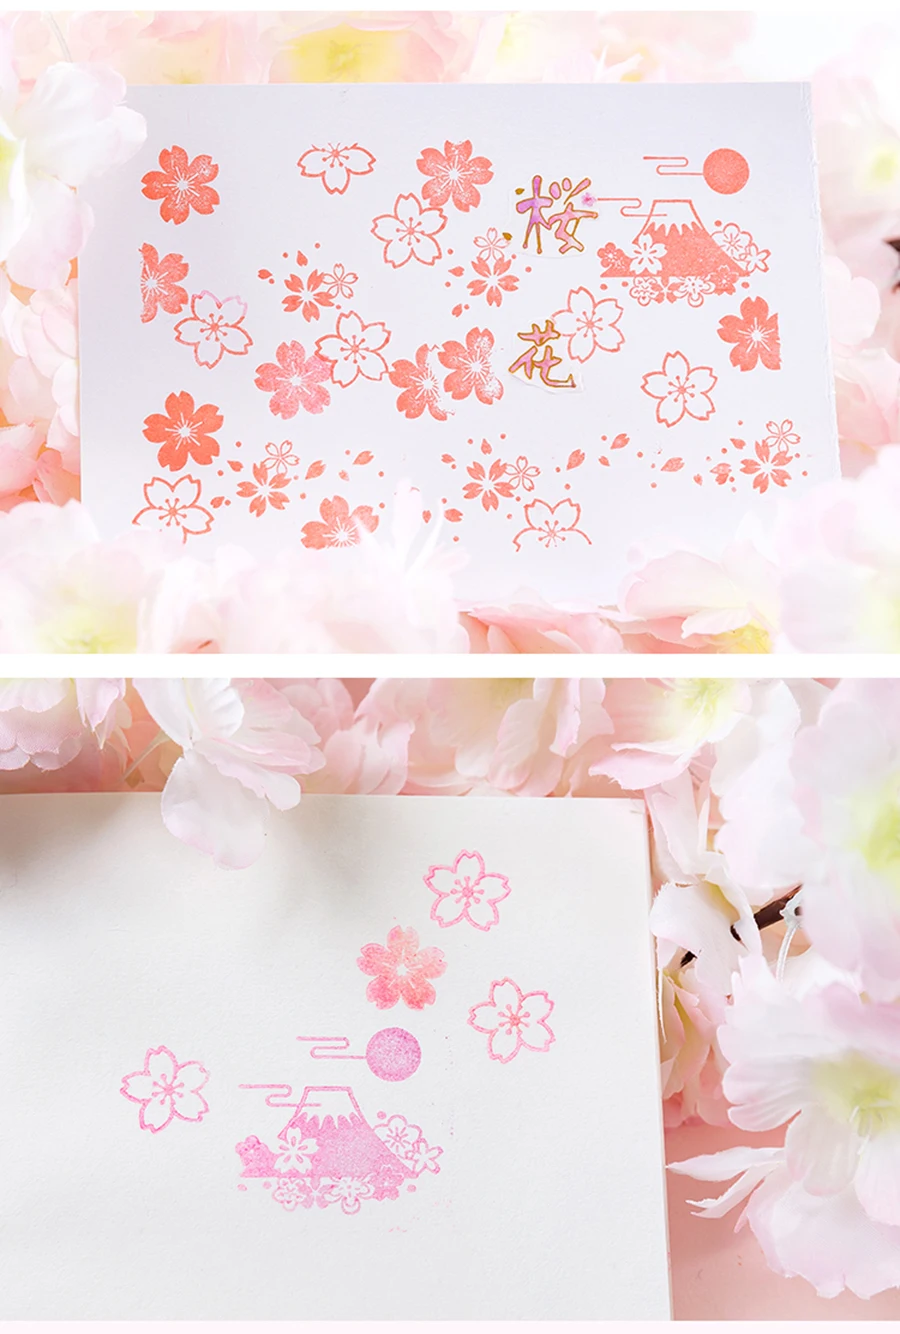 Японский вишневый цвет серии Деревянный штамп DIY Ремесло Деревянные и резиновые штампы для скрапбукинга канцелярские товары Скрапбукинг Стандартный штамп